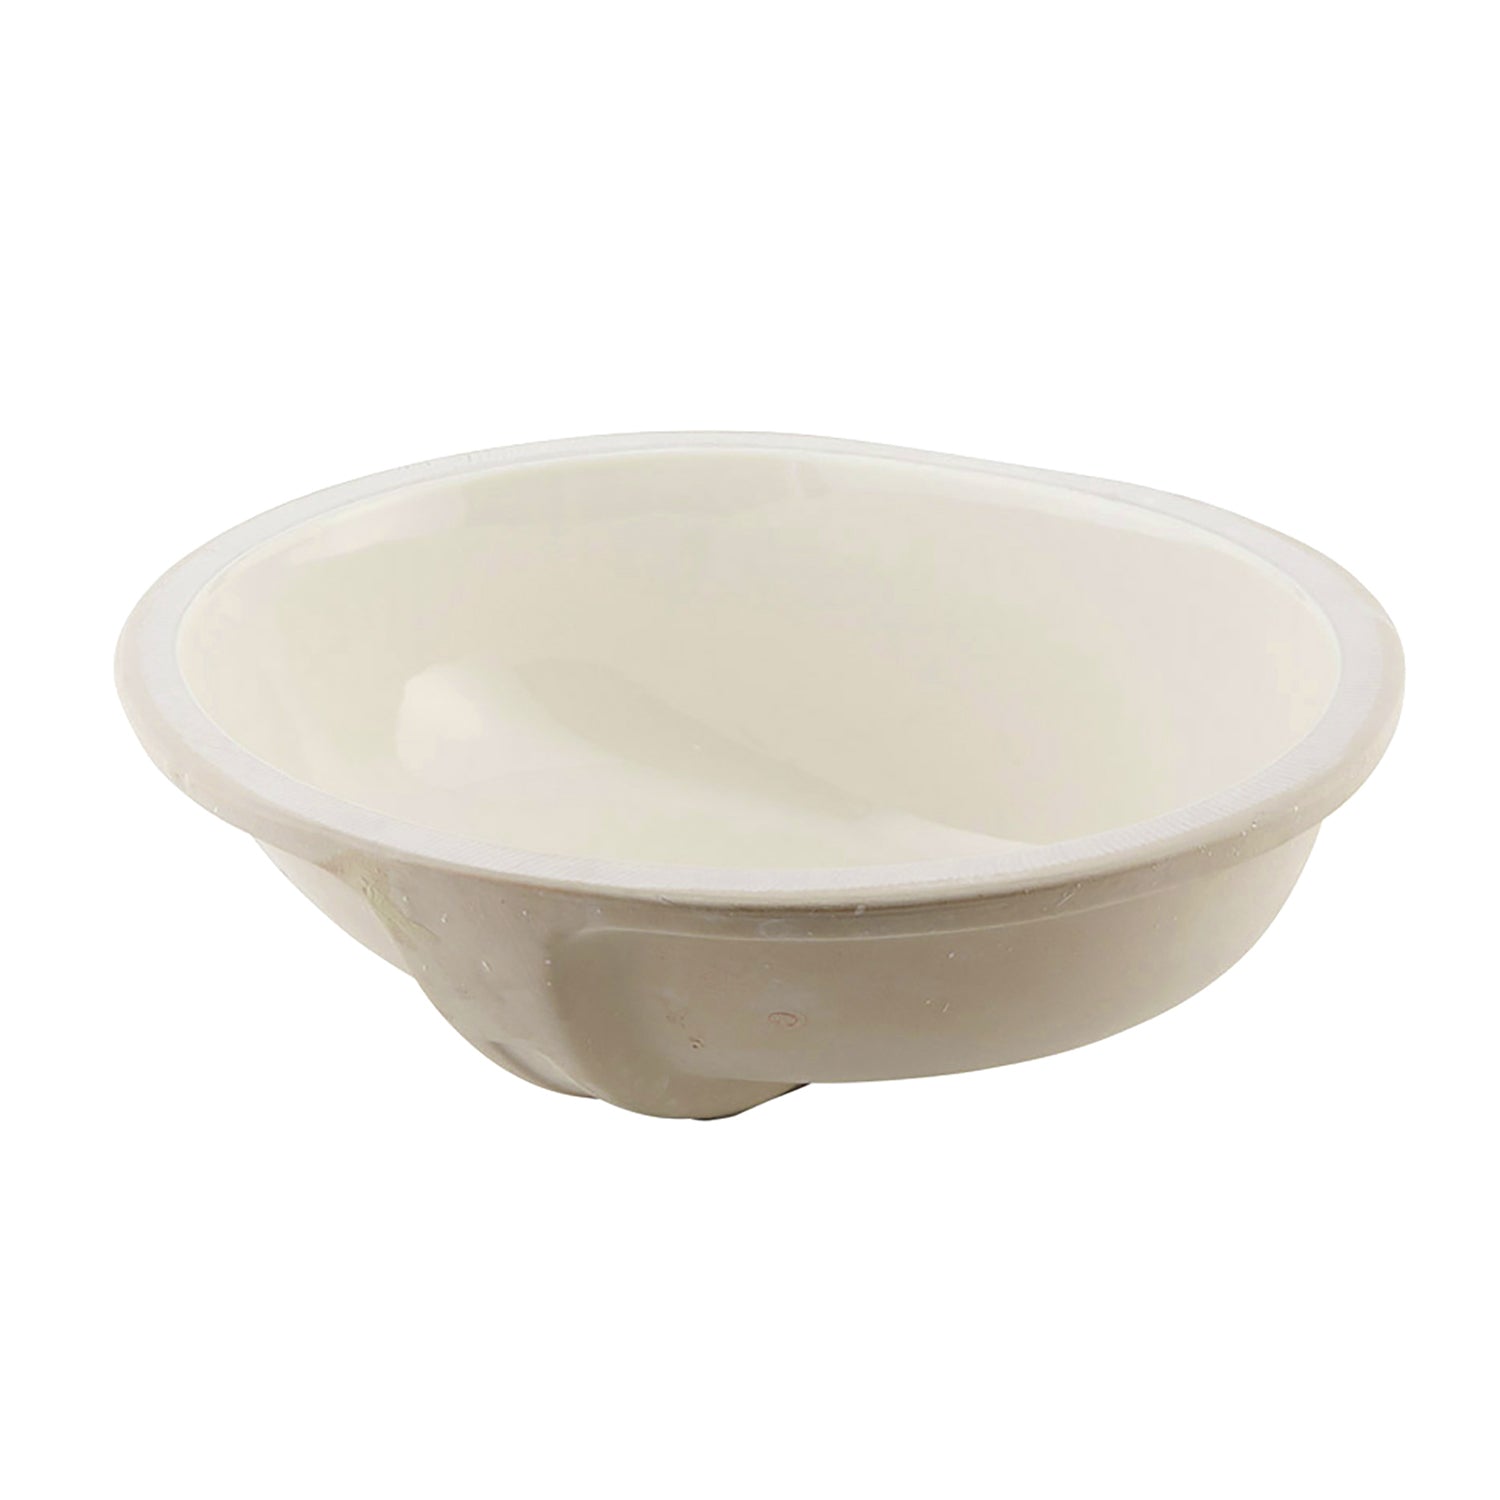 Lavabo de baño bajo encimera ovalado de cerámica DAX, acabado marfil, 19-1/2 x 16 x 8 pulgadas (BSN-201)